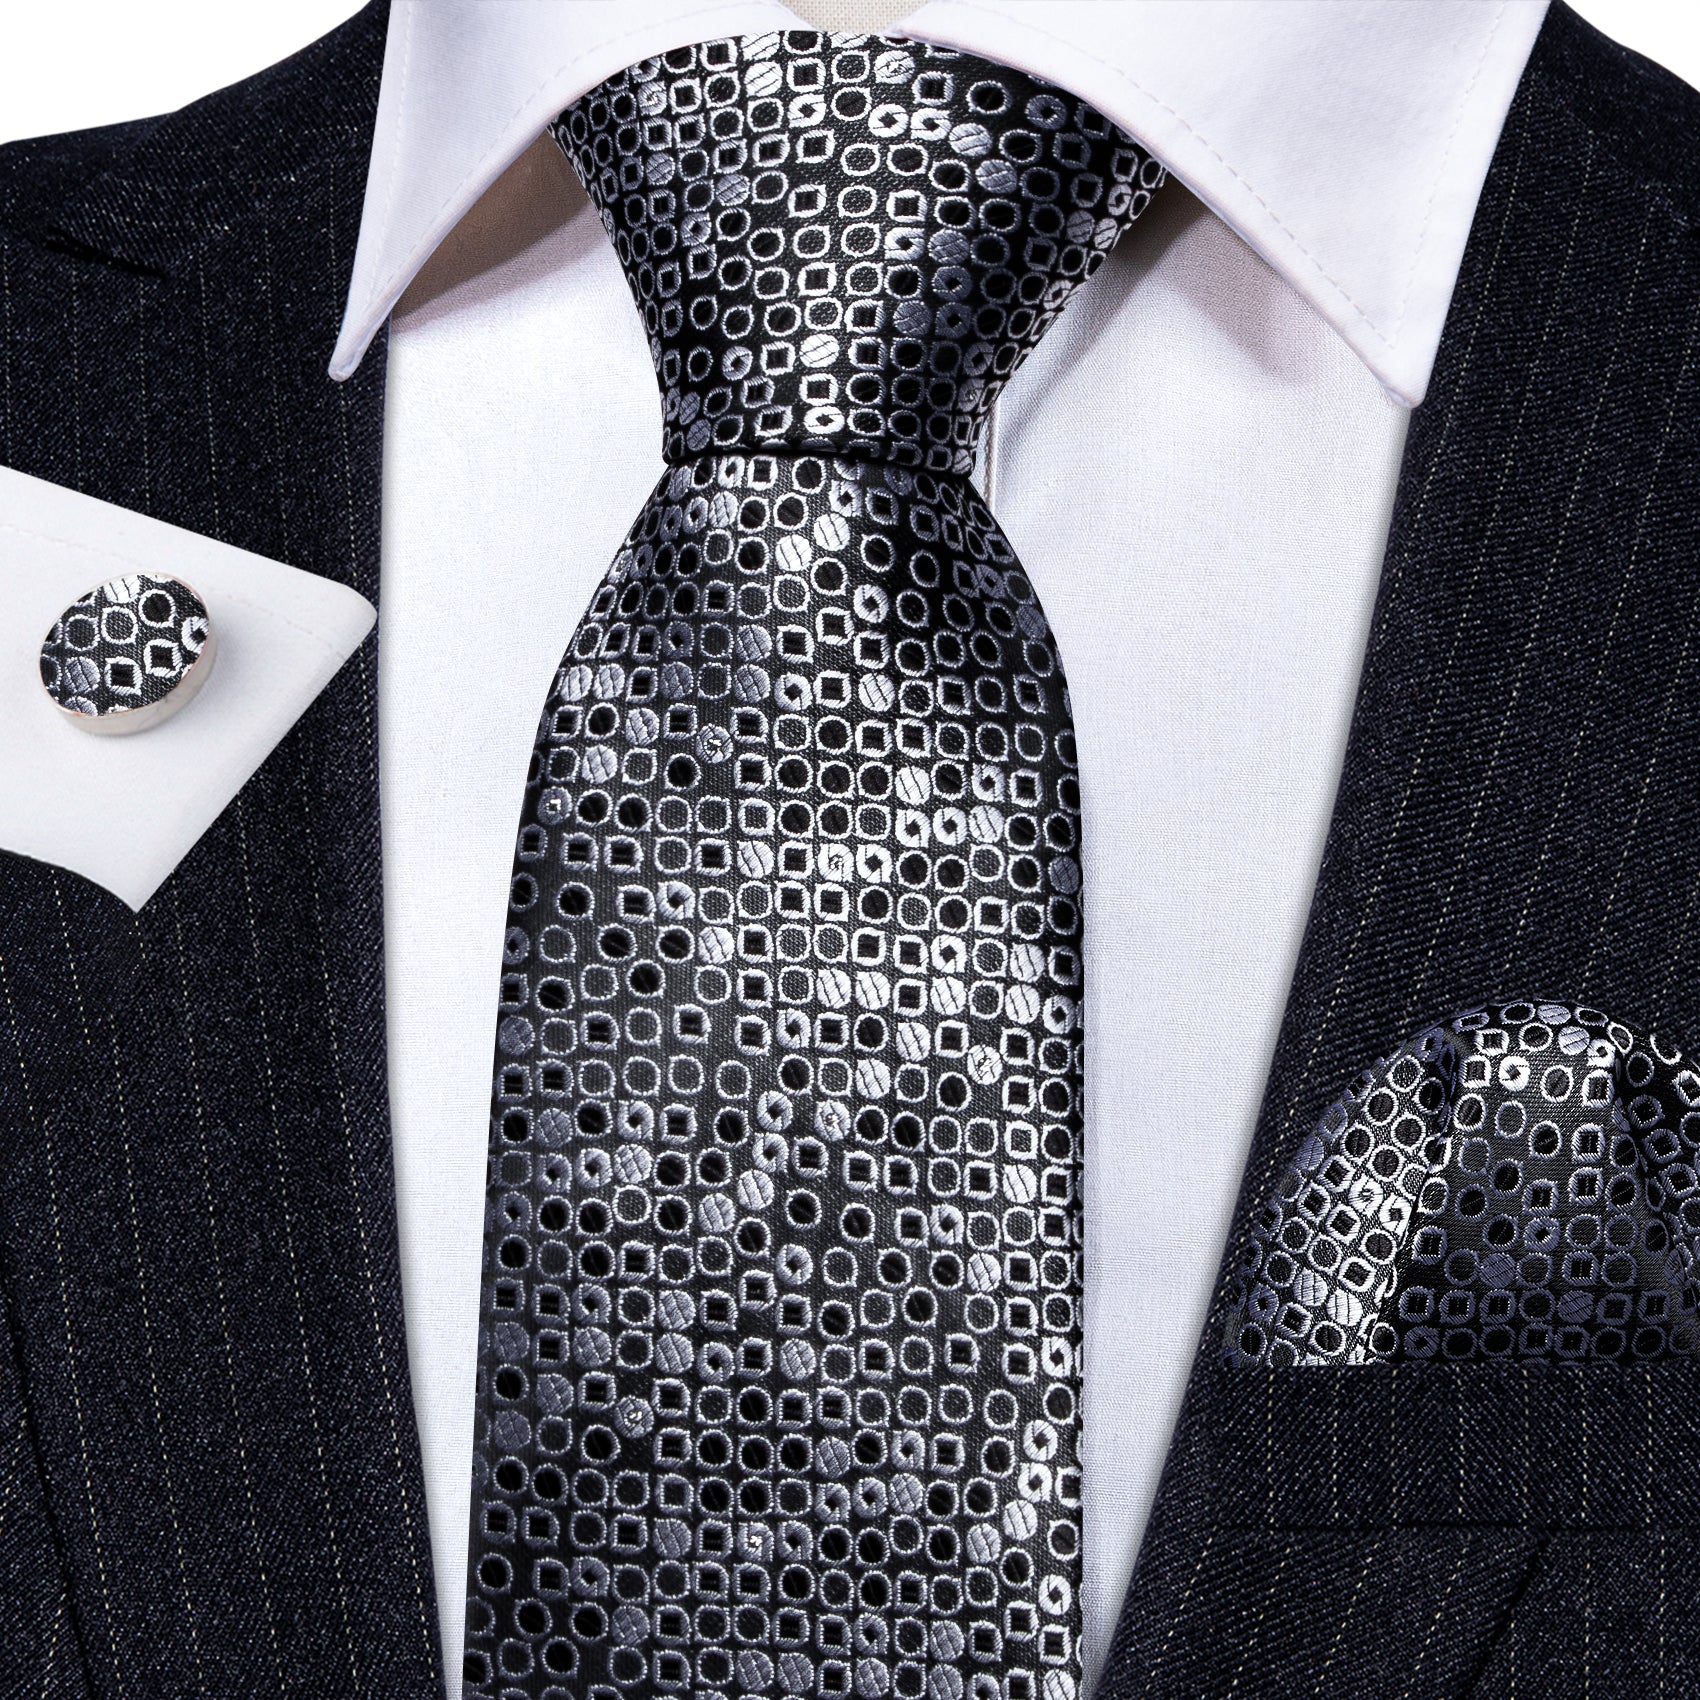 Black White Round Floral Silk Tie Handkerchief Cufflinks Set